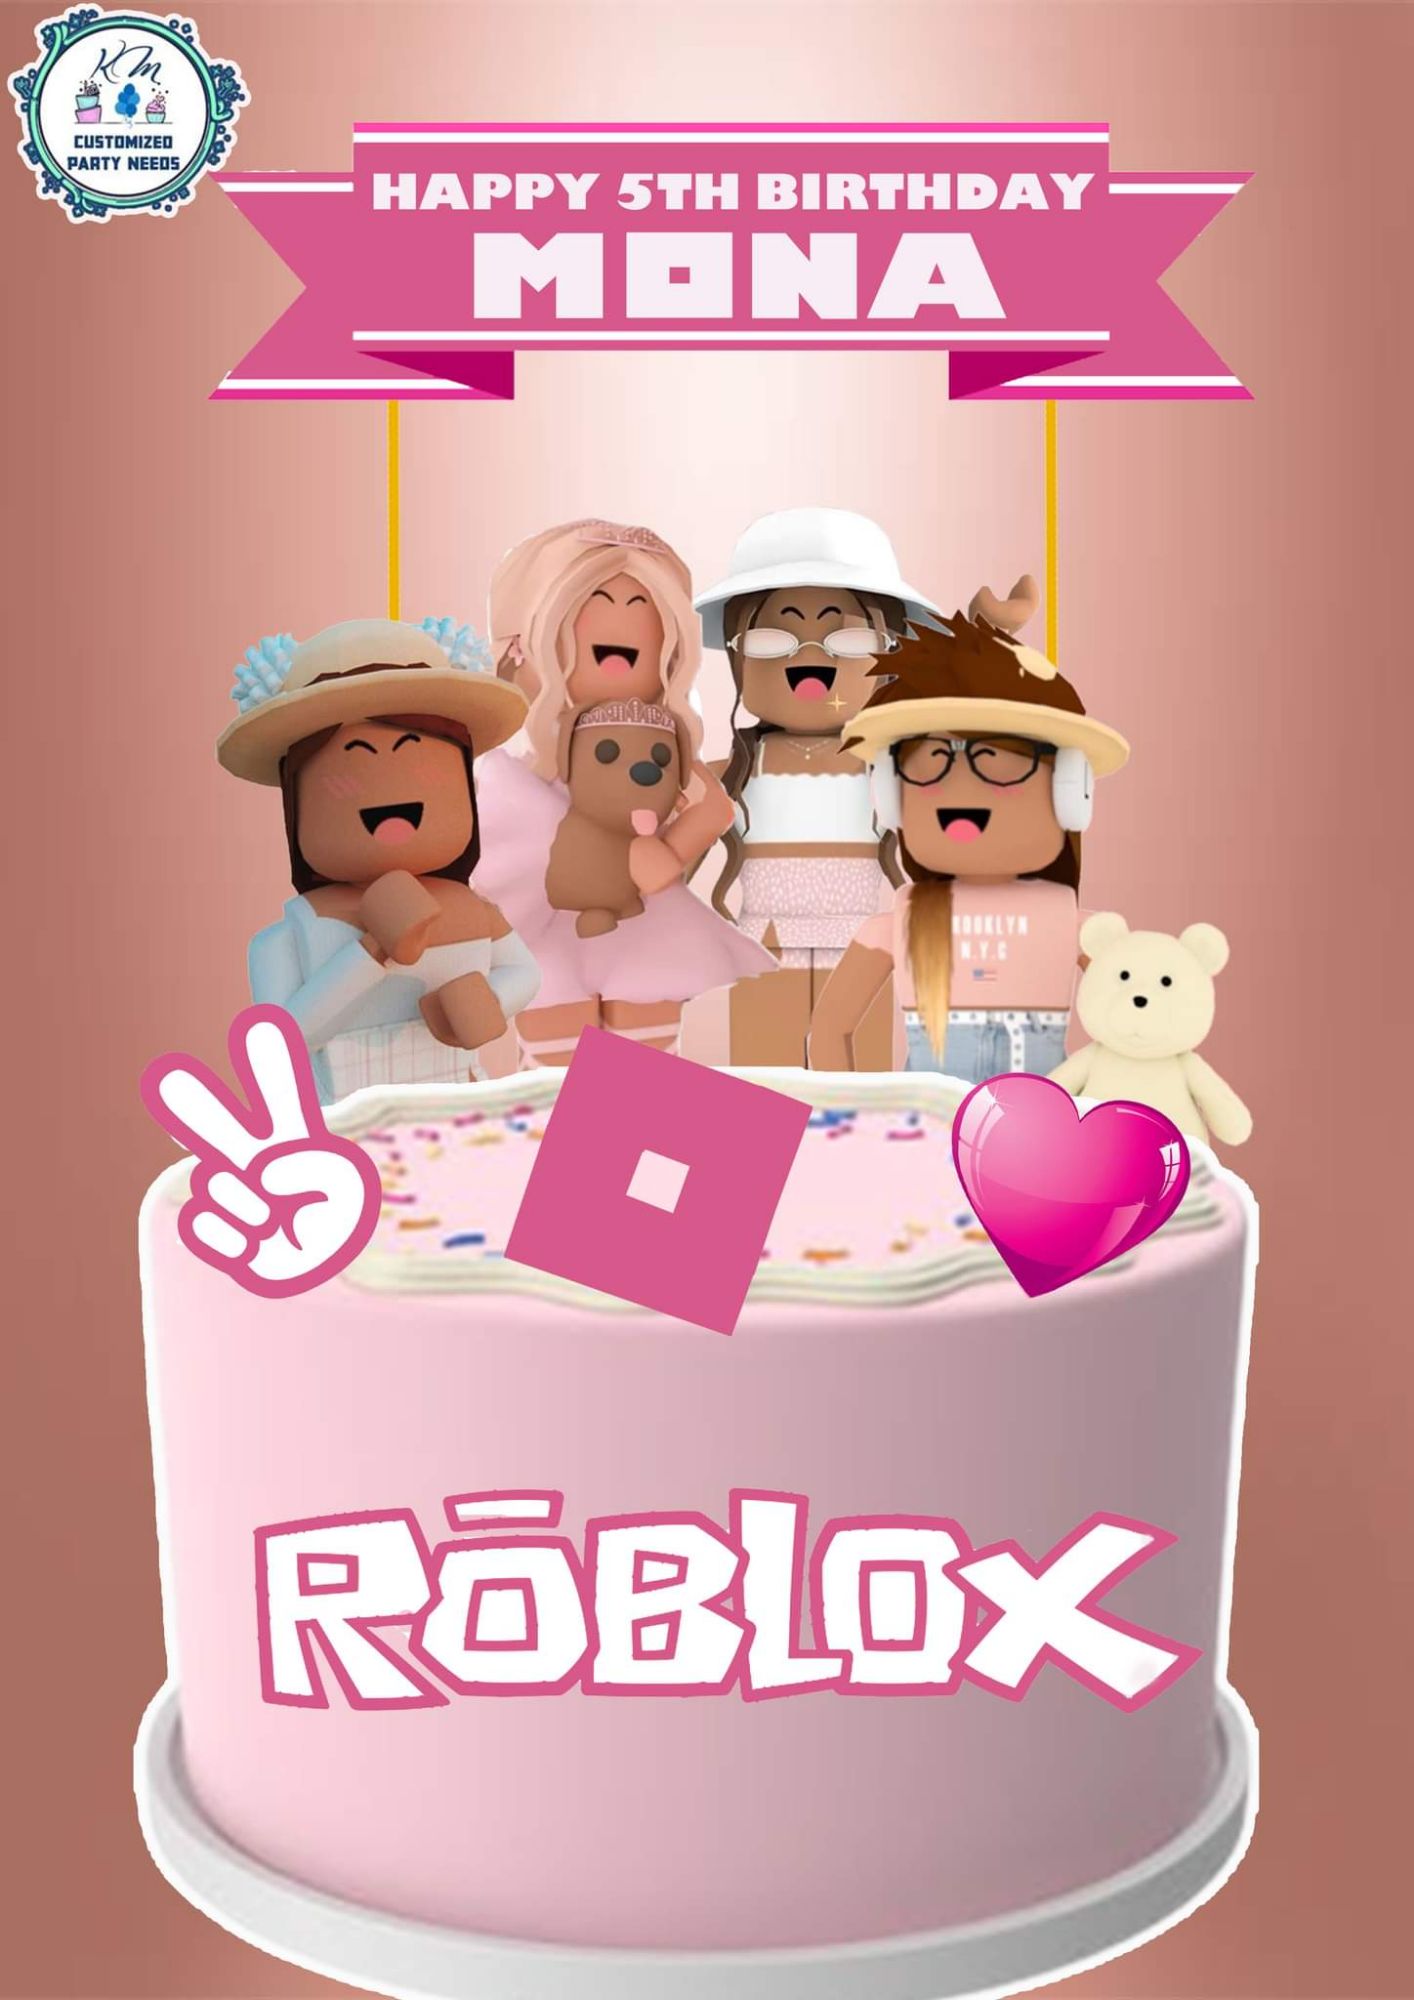 roblox-cake-topper-for-girls-ubicaciondepersonas-cdmx-gob-mx